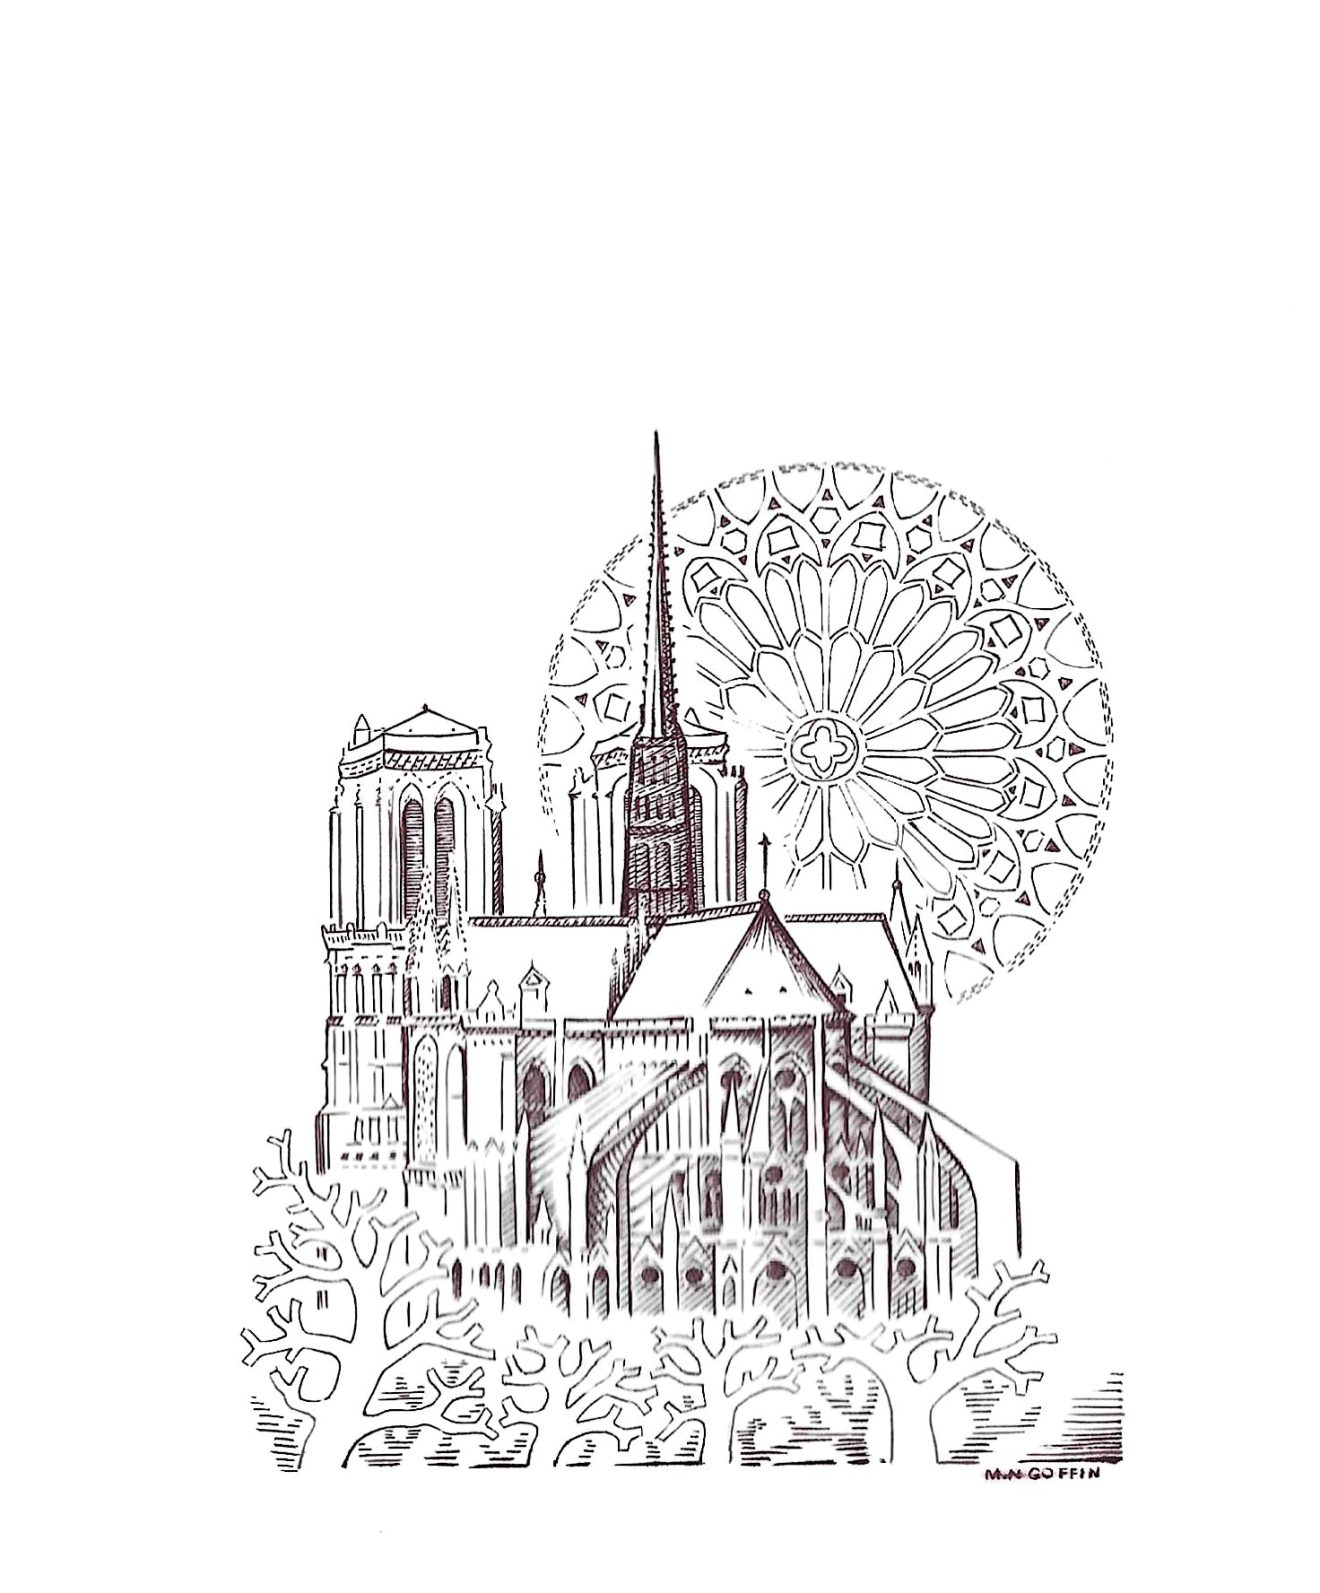 Gravure ATG de l’année 2022 : Marie-Noëlle Goffin ressuscite Notre-Dame